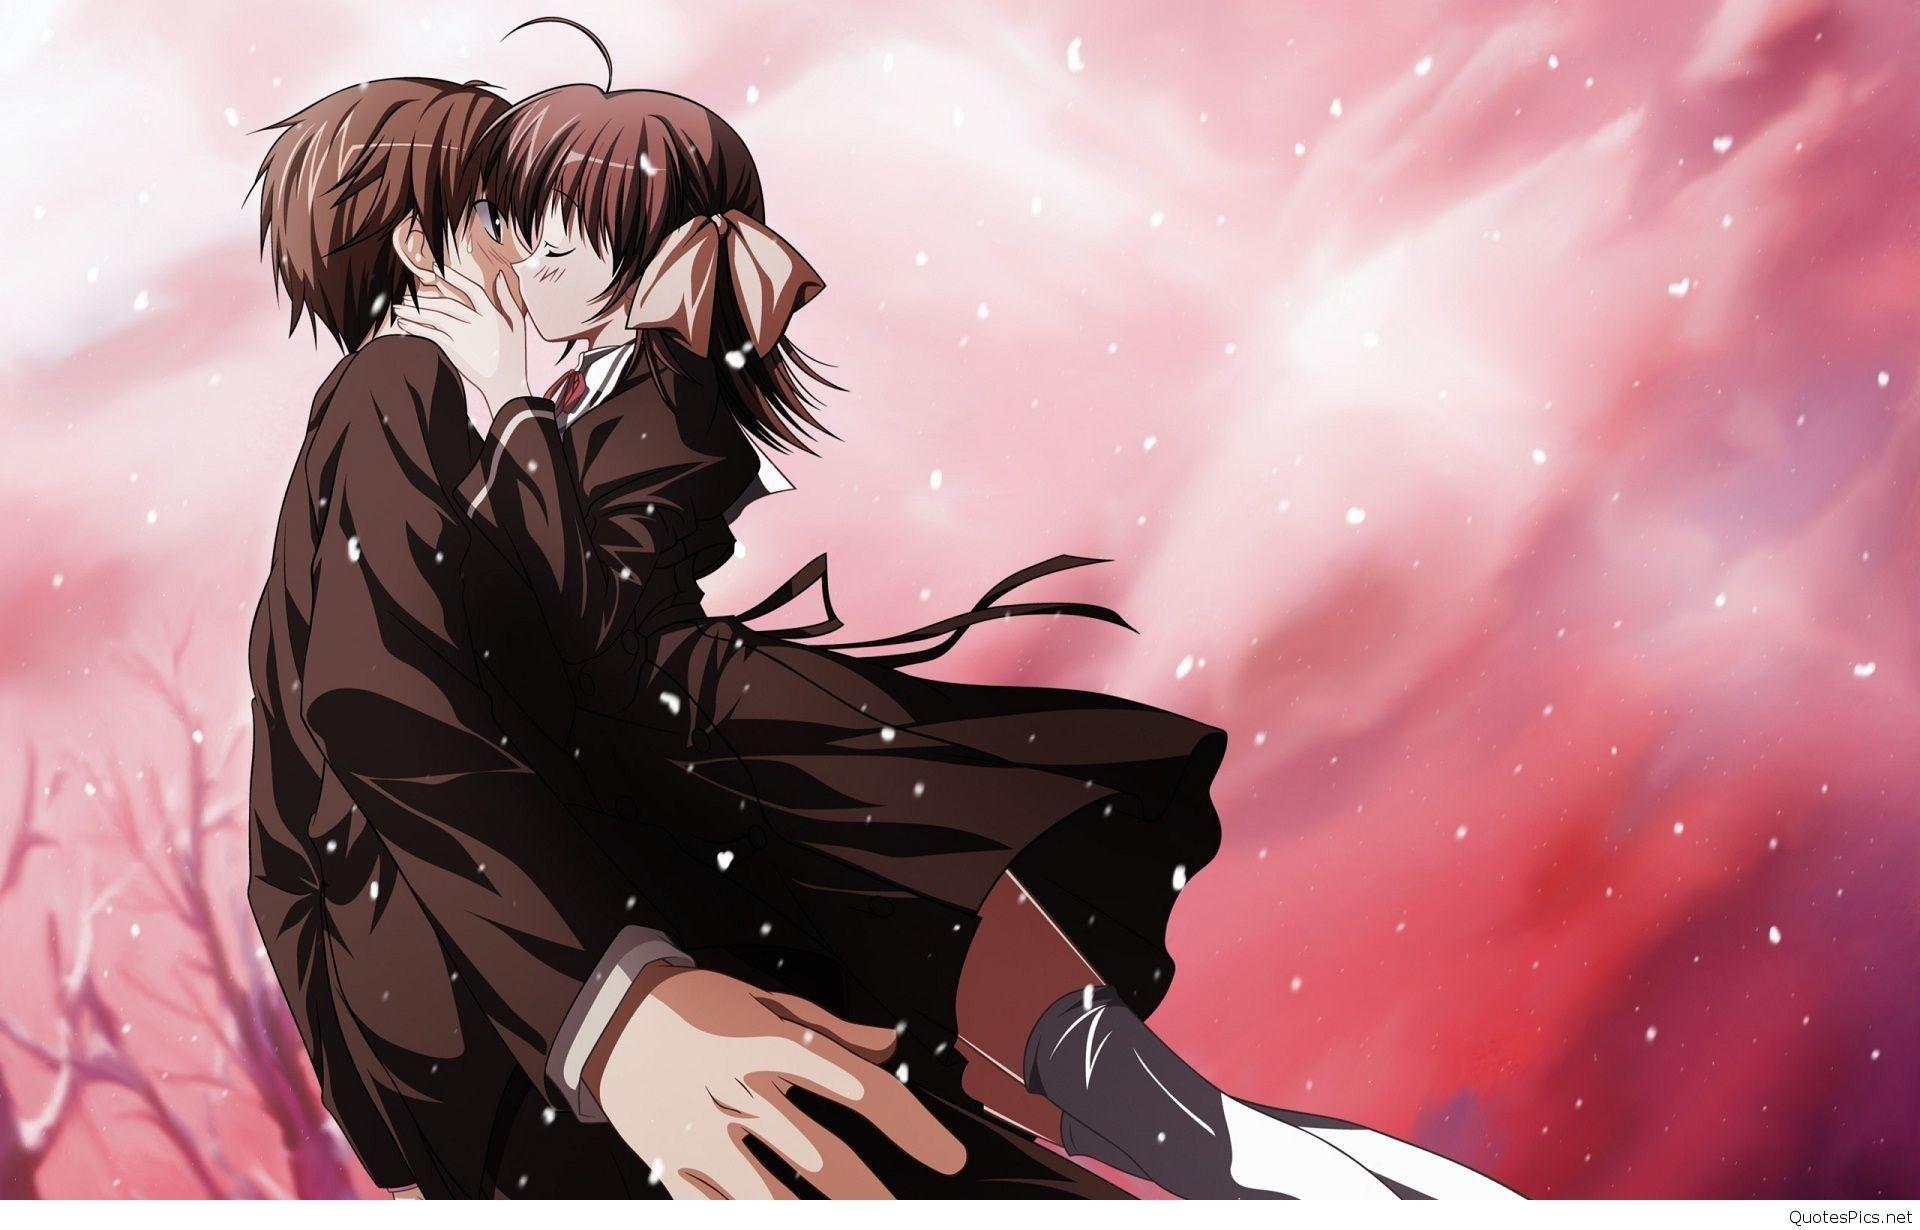 Download Anime Couple Hug Back Wallpaper | Wallpapers.com